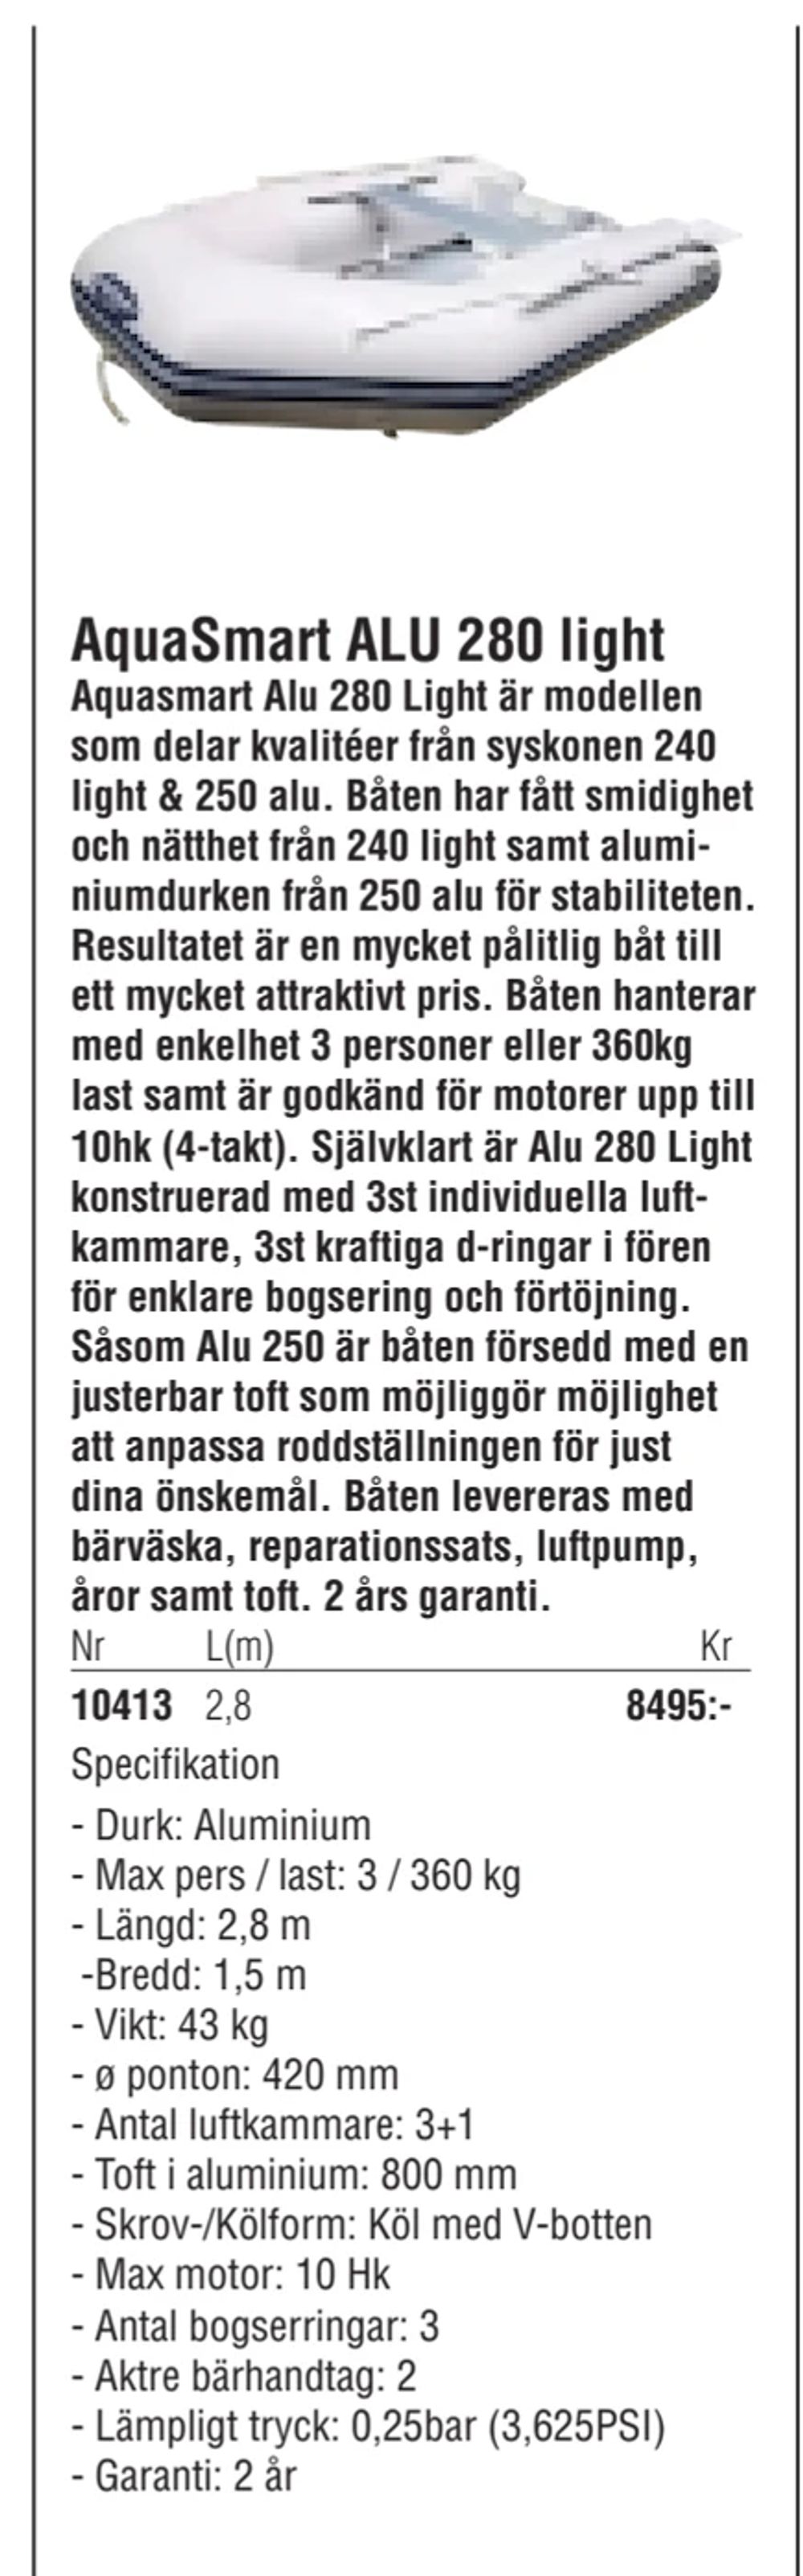 Erbjudanden på AquaSmart ALU 280 light från Erlandsons Brygga för 8 495 kr